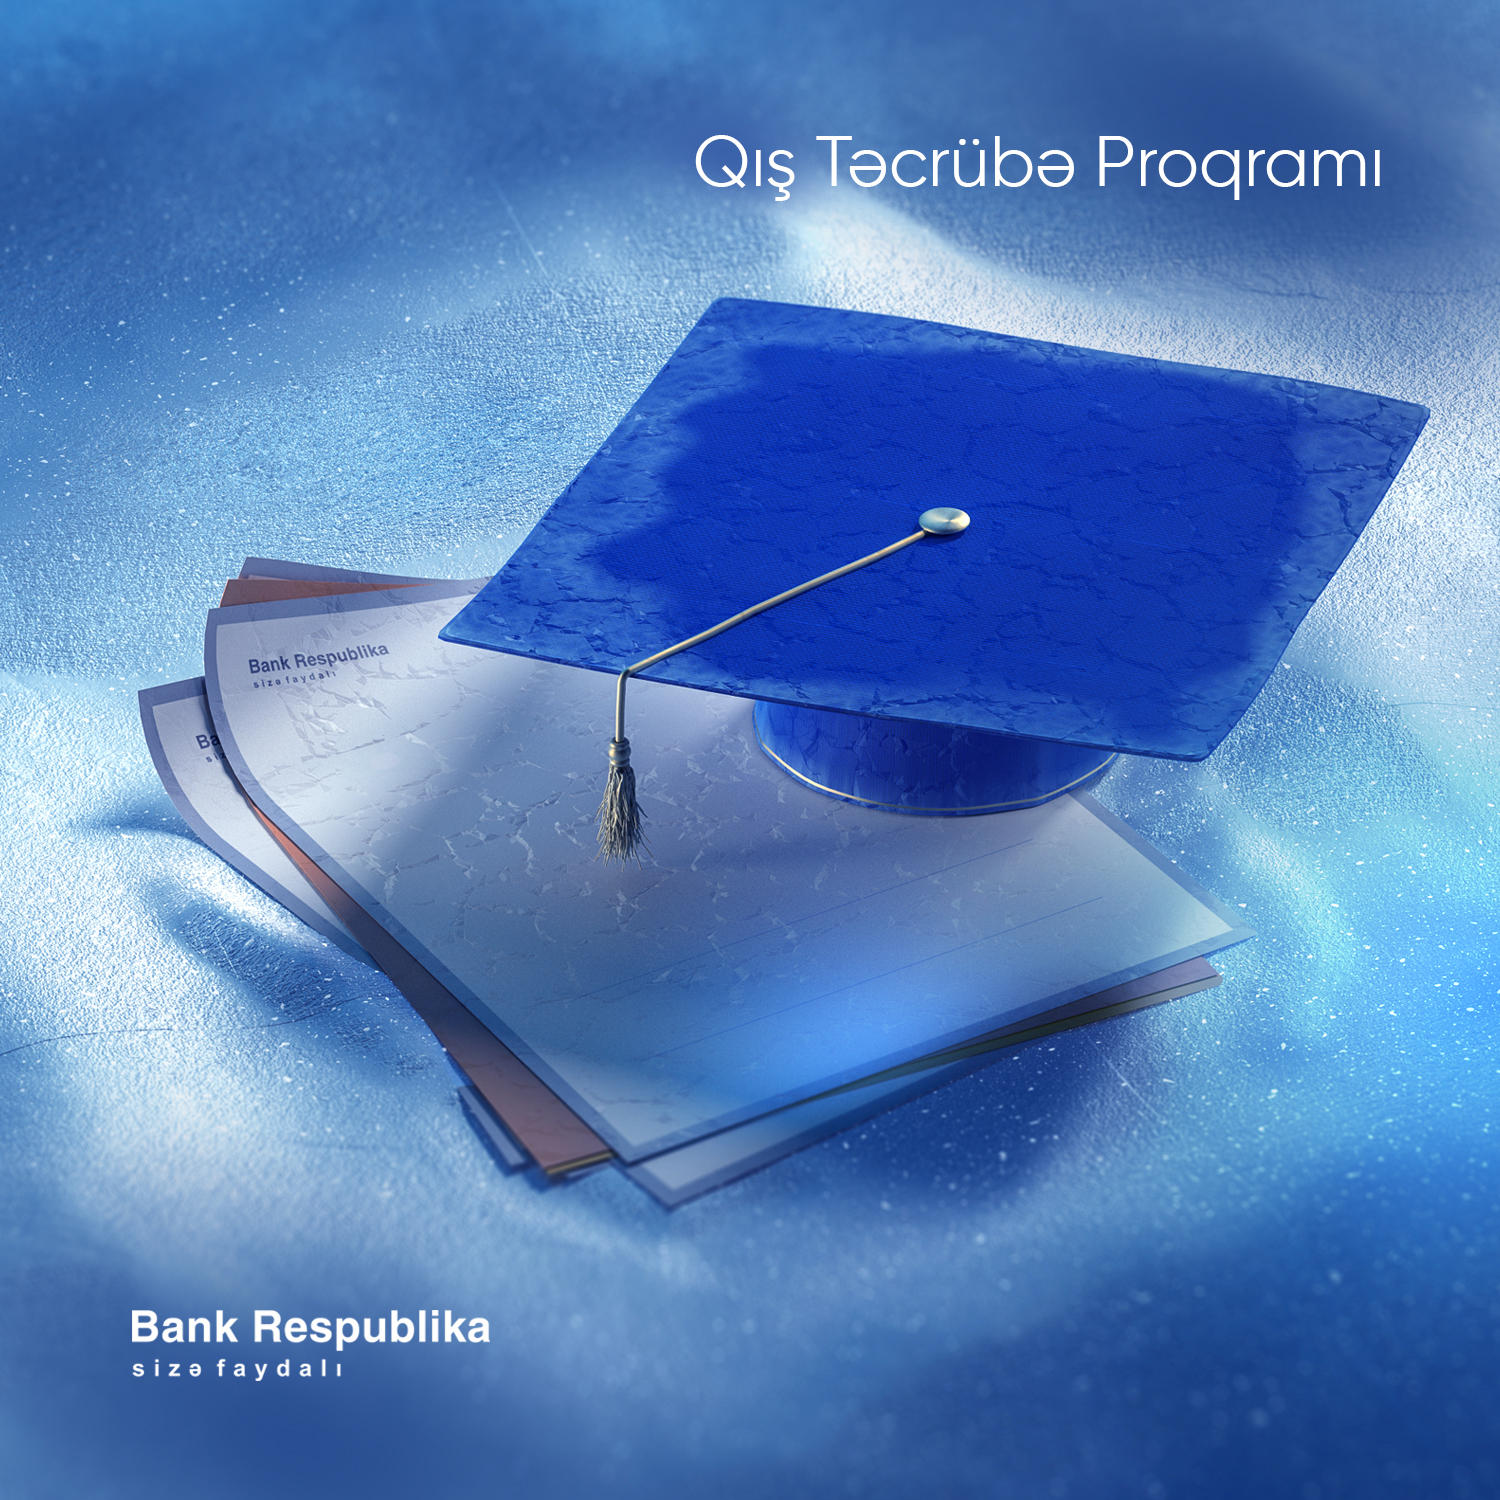 Азербайджанские студенты и выпускники смогут практиковаться в Bank Respublika